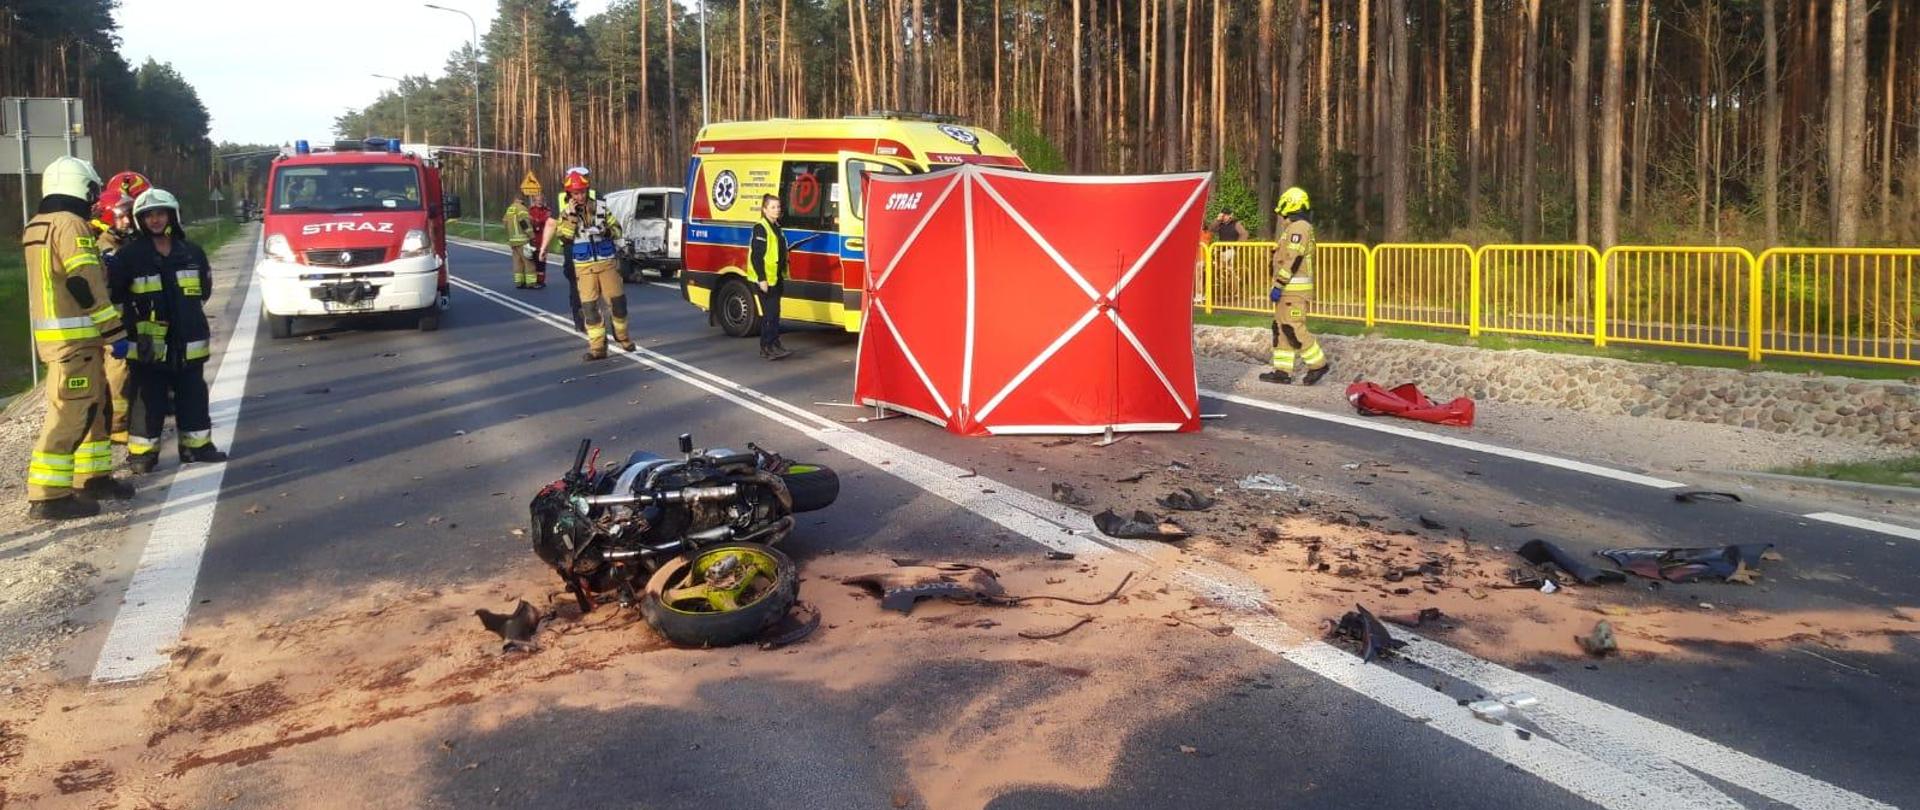 Śmiertelny wypadek motocyklisty w Plennej